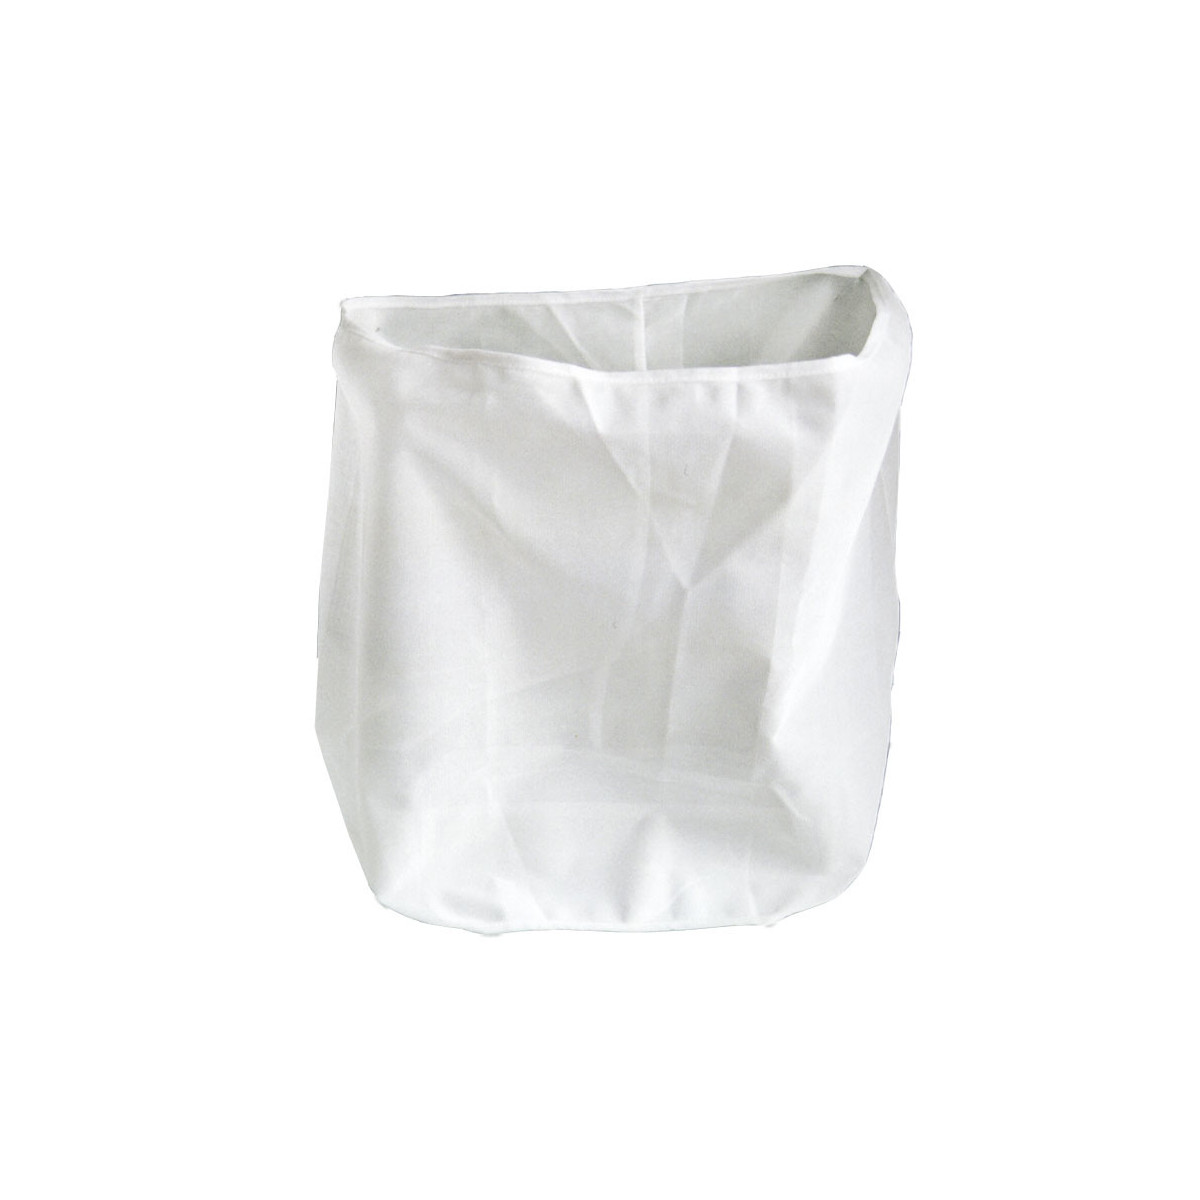 Nylon alimentaire filtre sac maille 80-300 maille lait eau miel